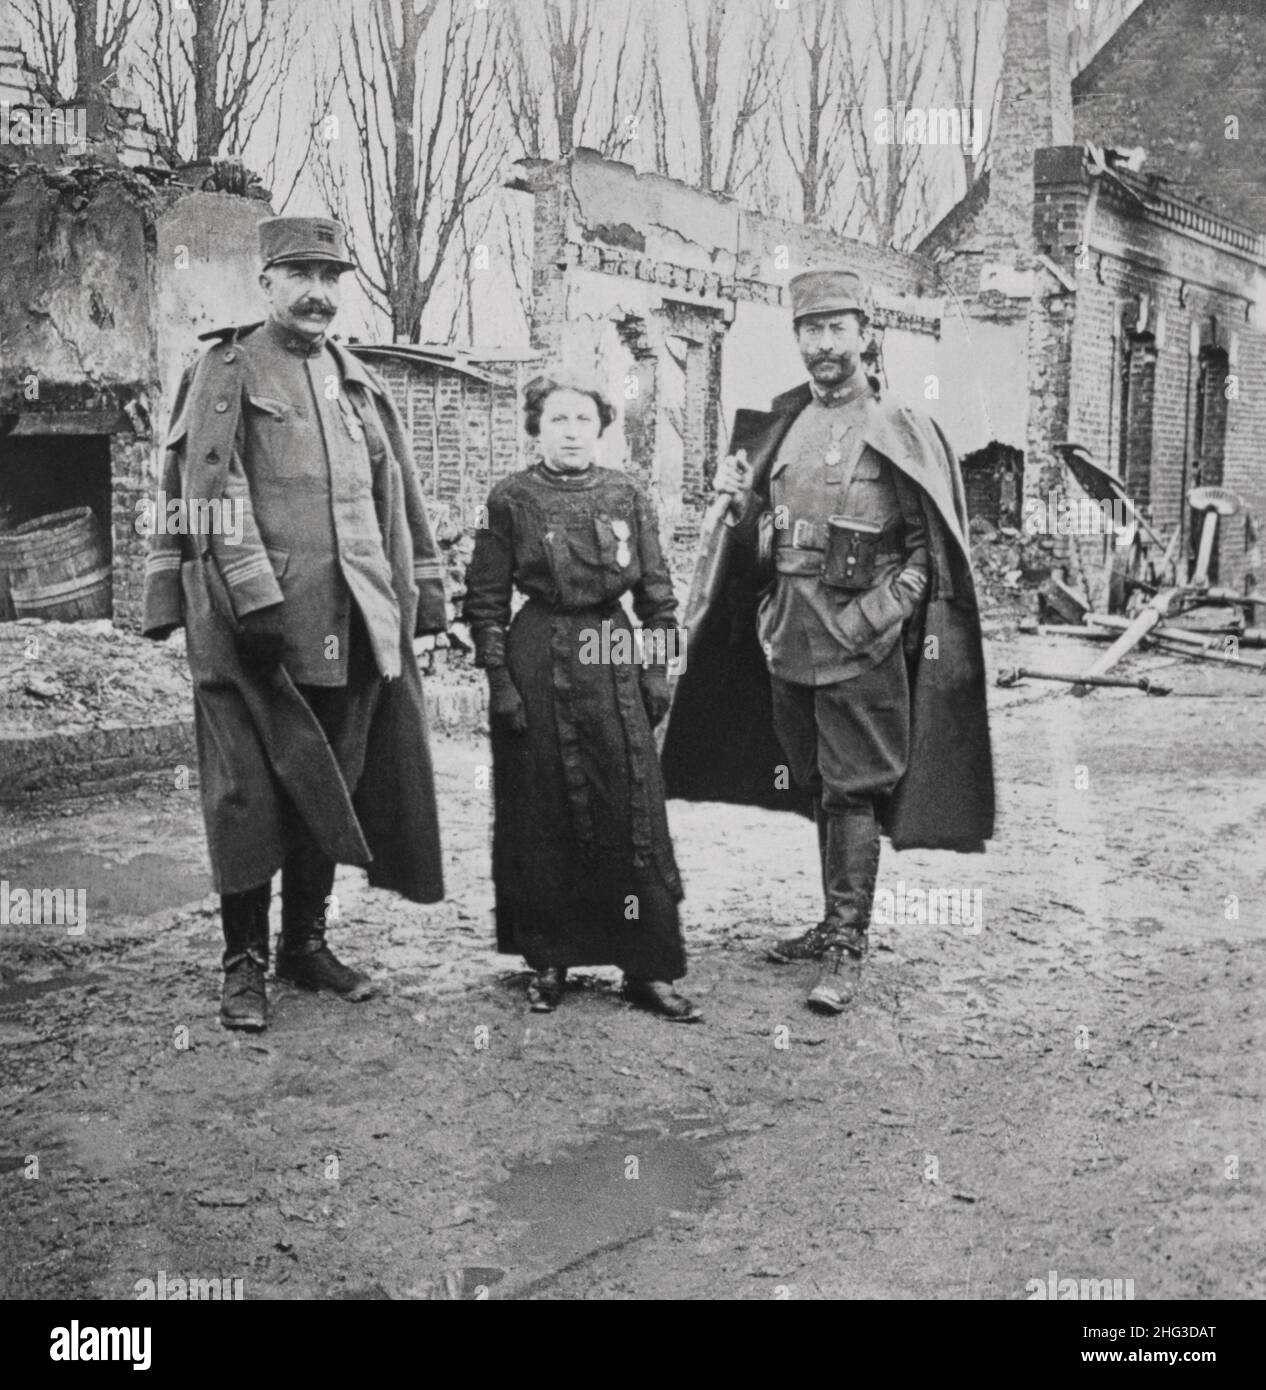 Foto de archivo de la Primera Guerra Mundial pueblo arruinado de Eclusiers, Francia. M'lláh Semmer decorado para acciones heroicas bajo fuego. 1914-1918 Foto de stock